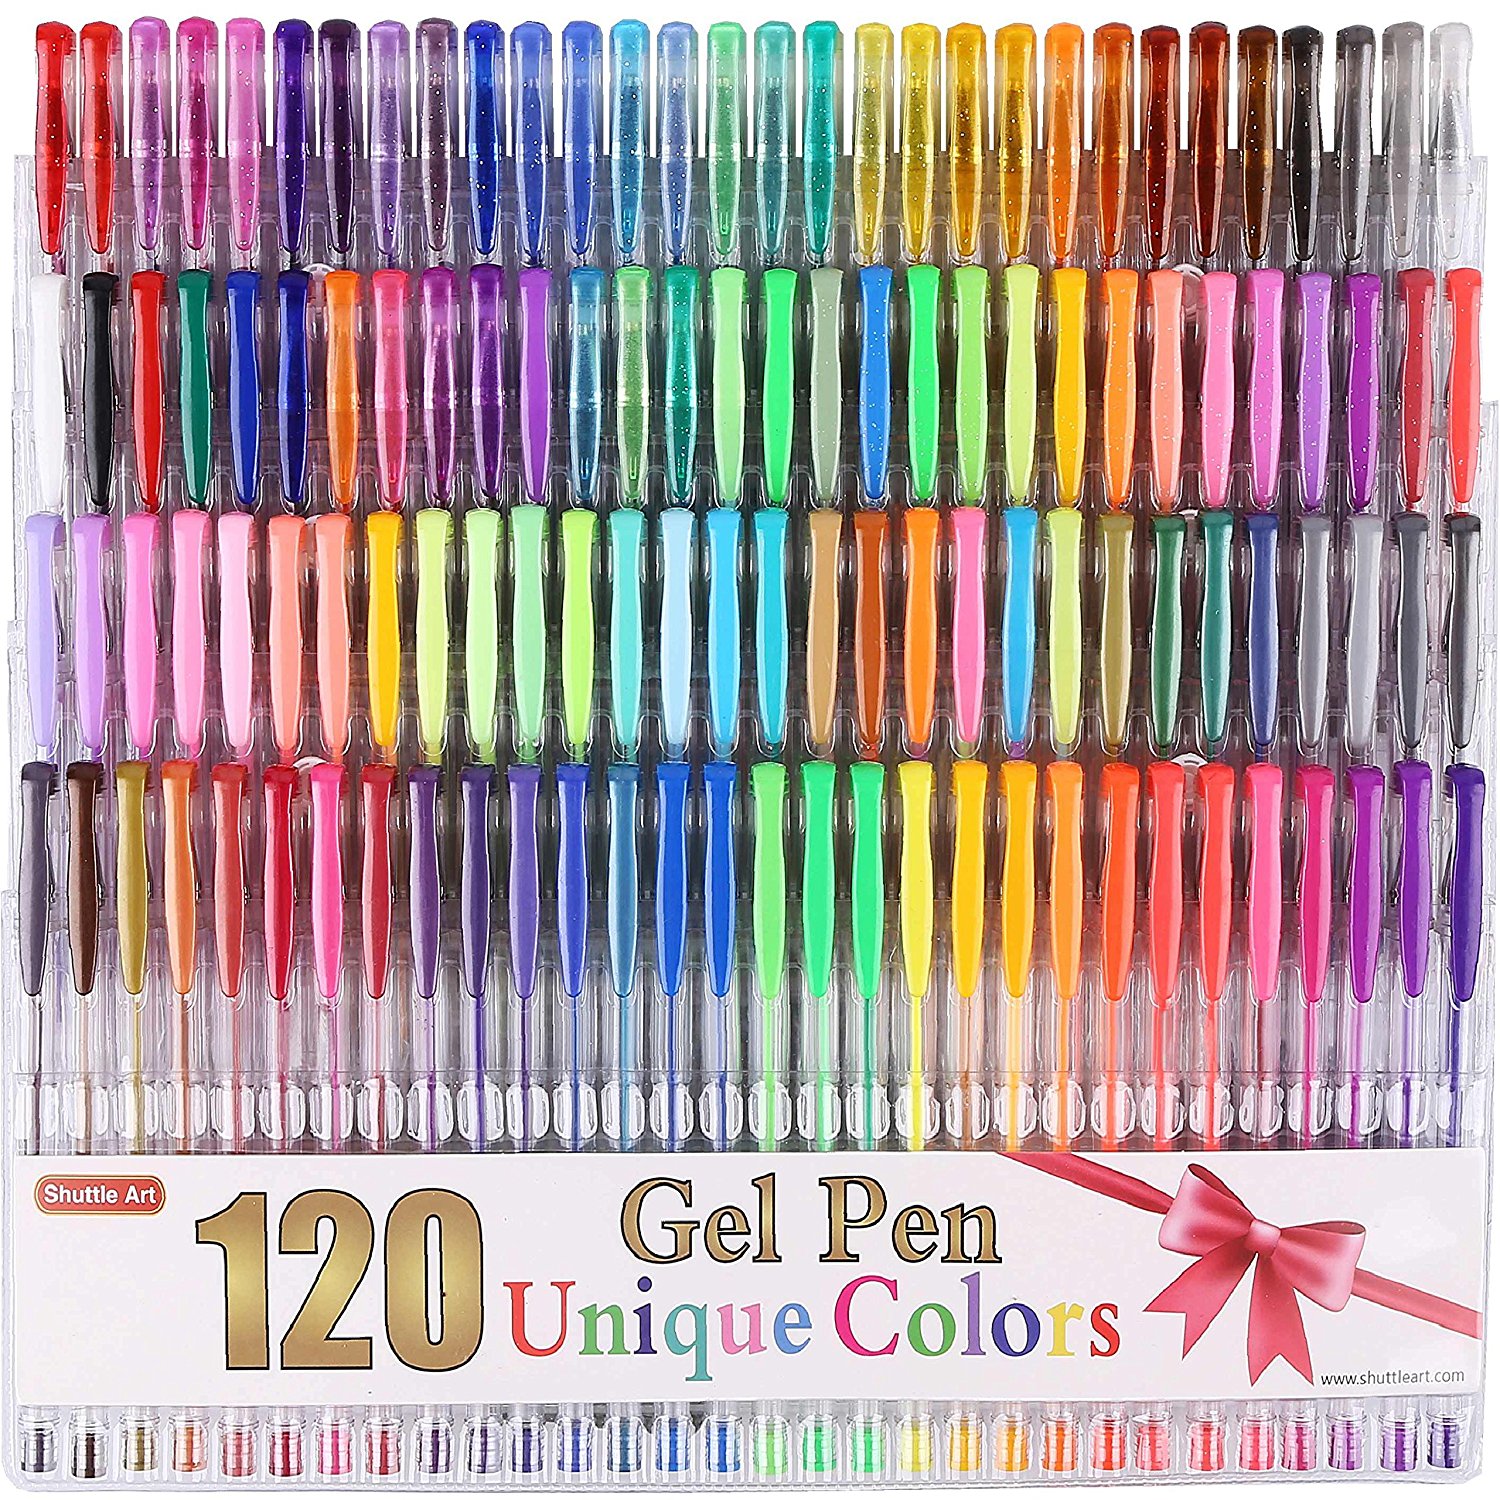 Shuttle Art 120 Unique Colors Gel Pen Set – Just $19.89!